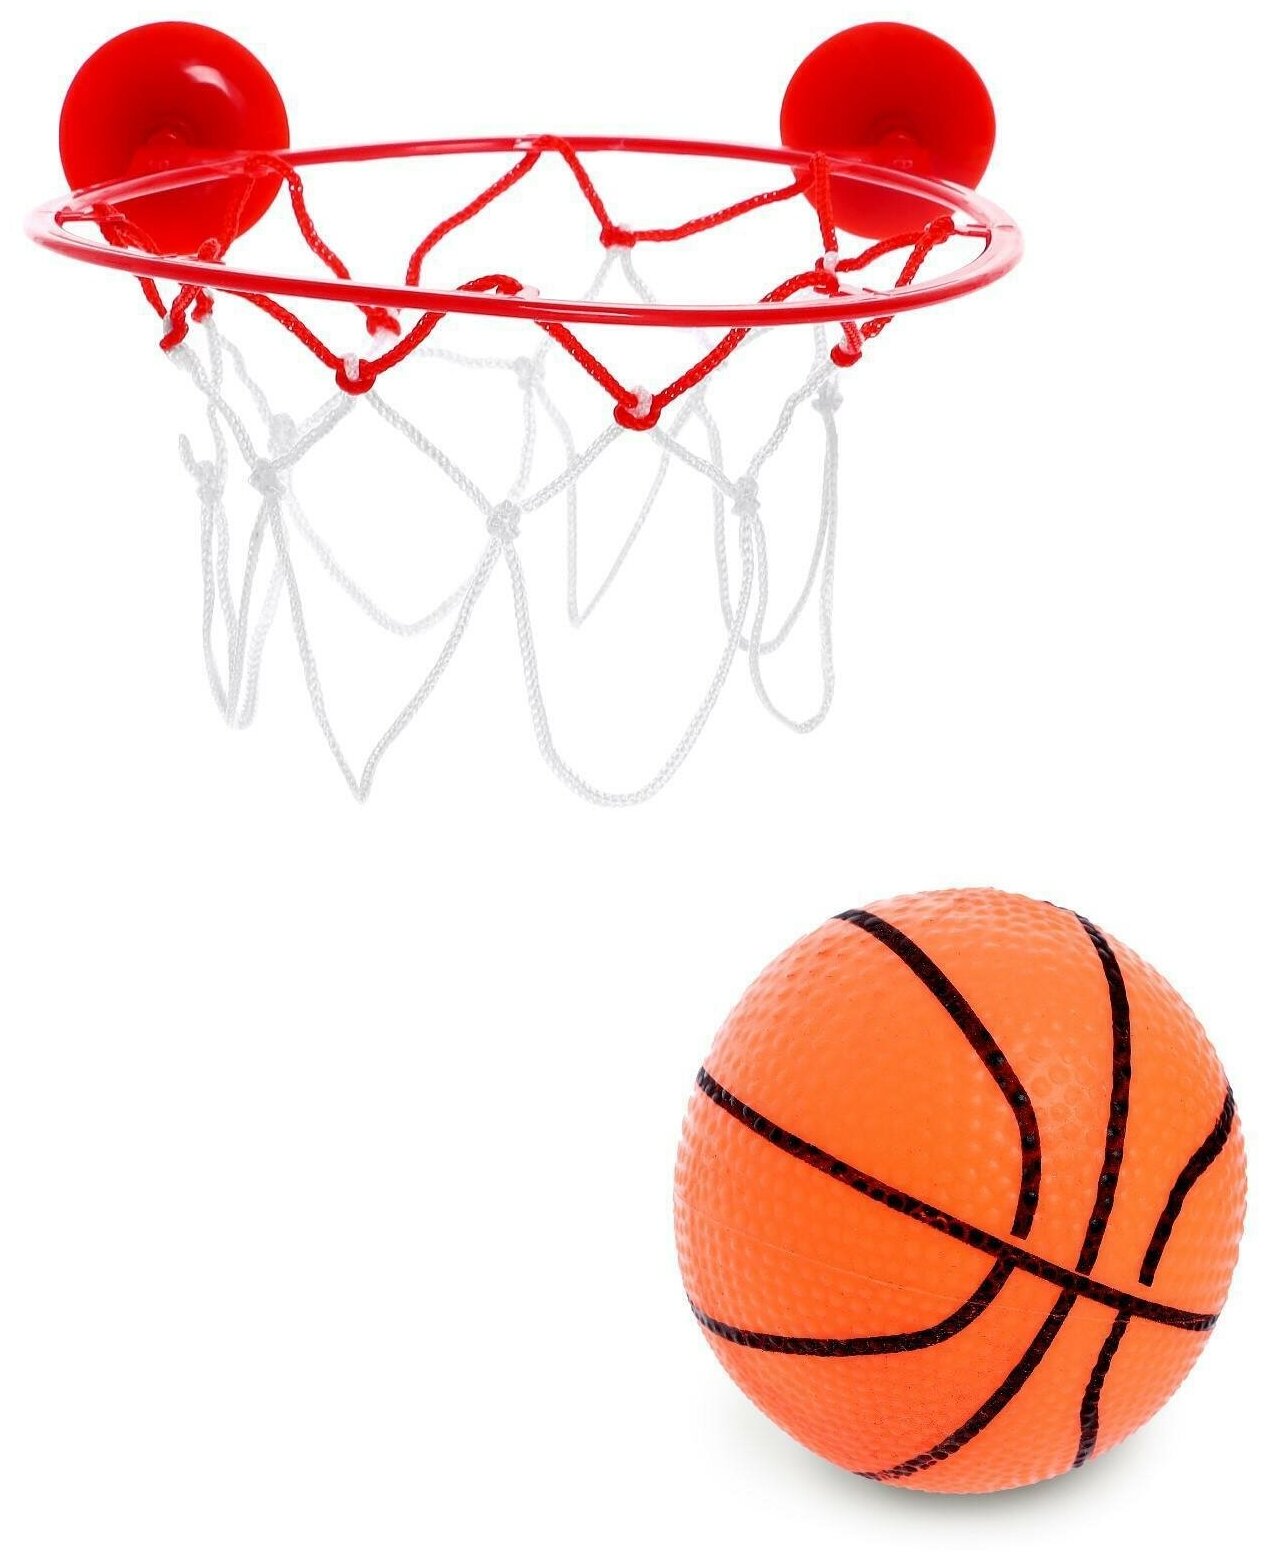 Баскетбол "Бросок" крепится на присоски / спортивный инвентарь / активный отдых /аксессуары для спортивных игр / (1 шт.)